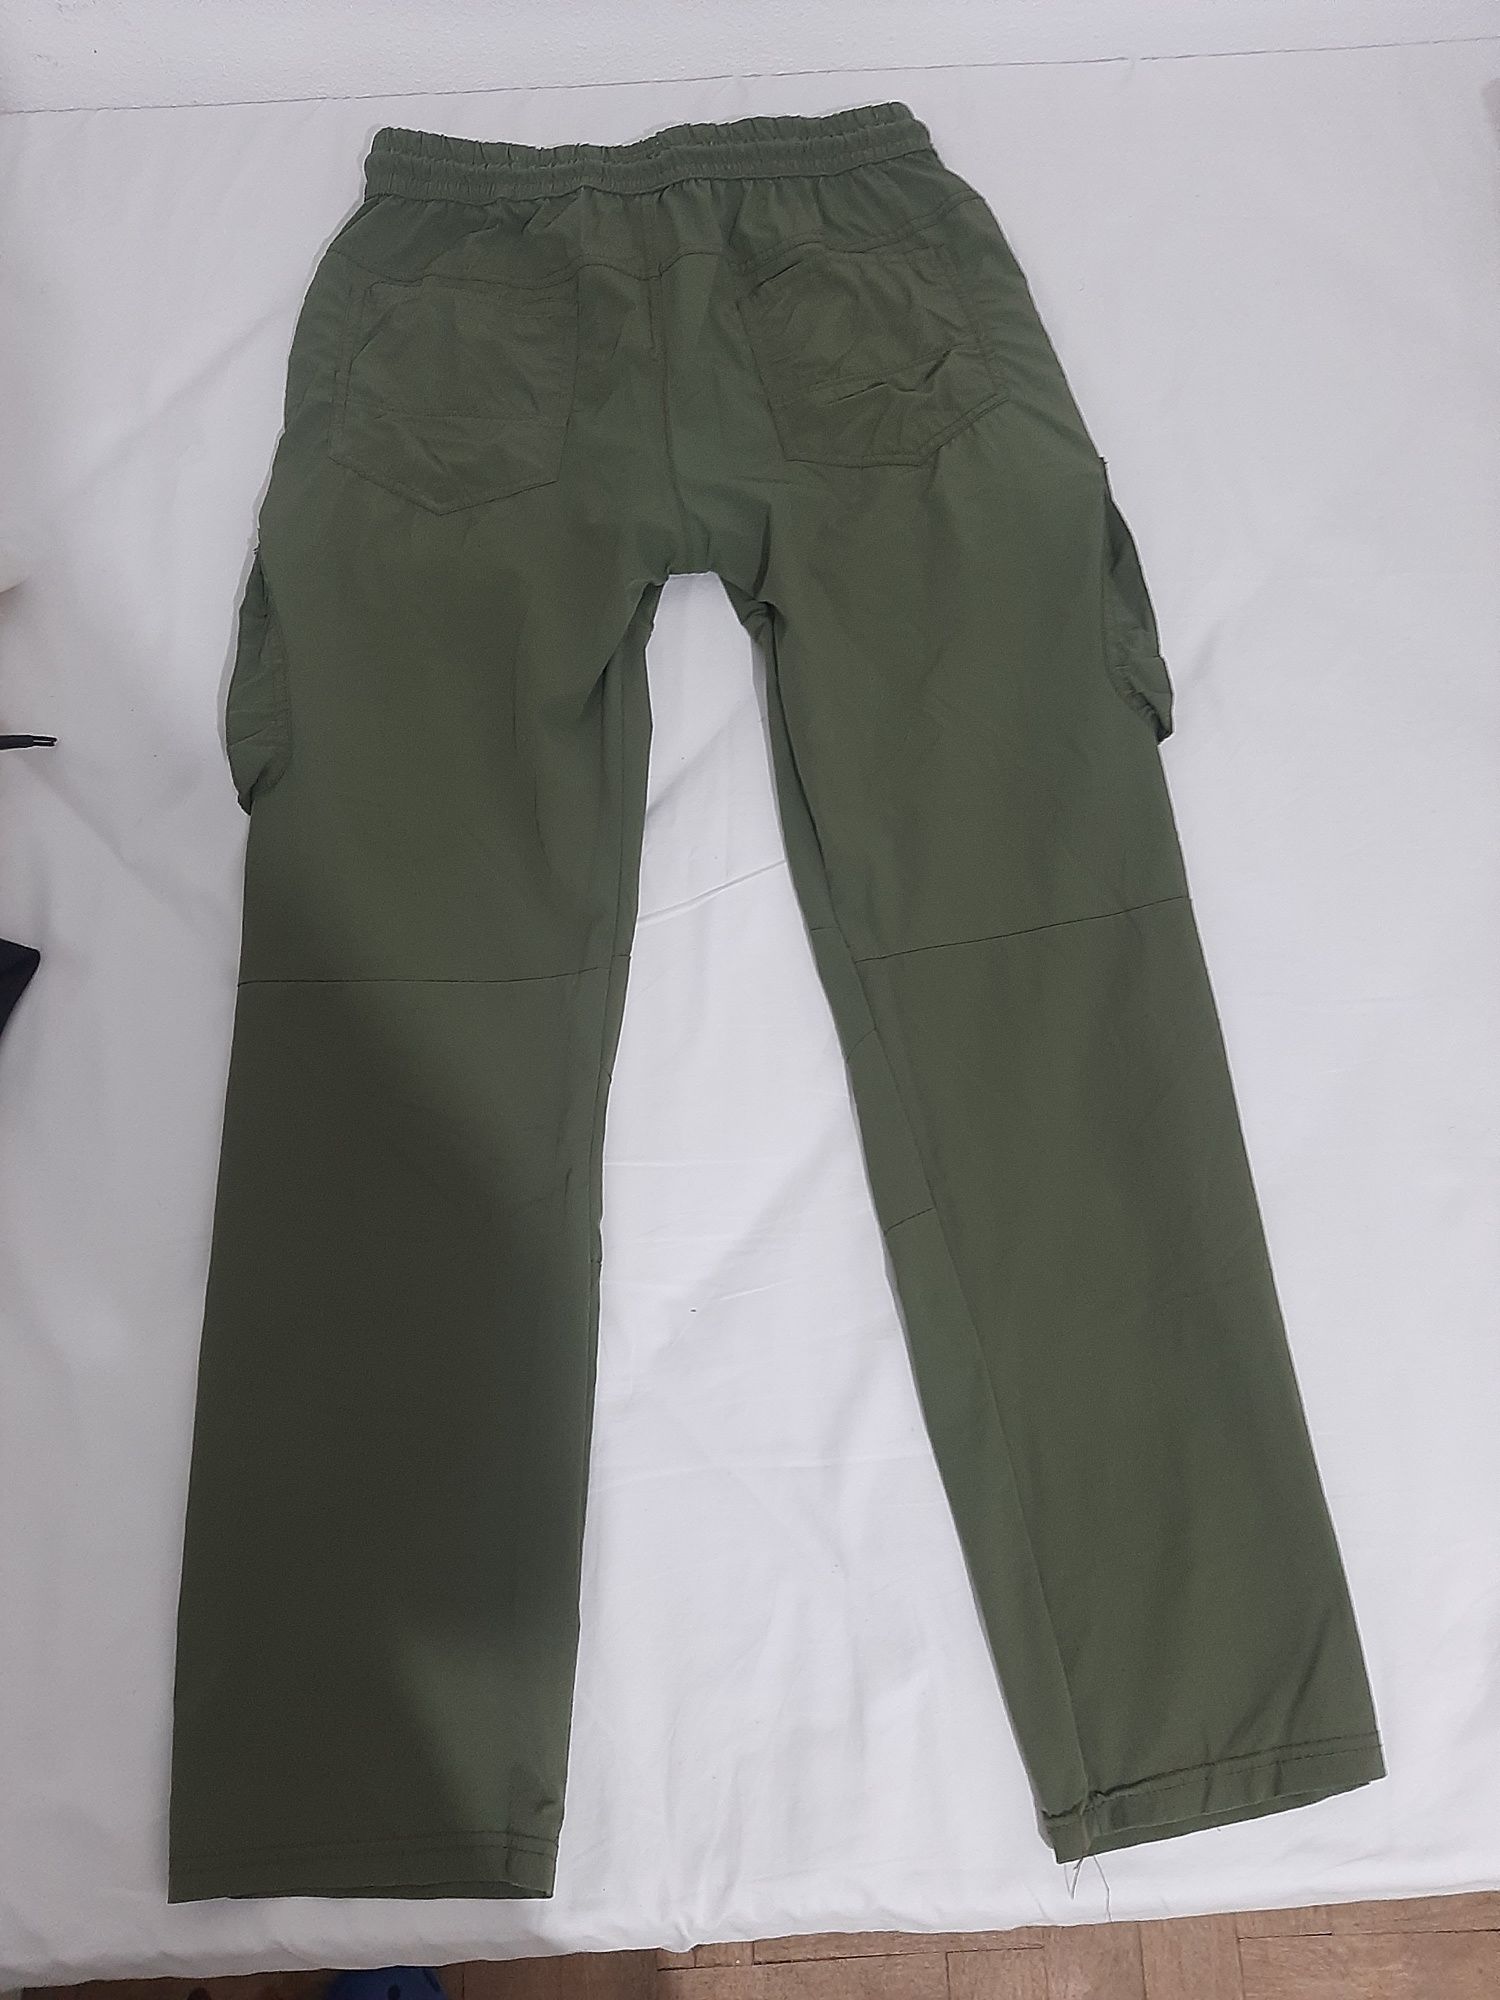 Calça verde Zara (Tamanho M) Original Unisexo disponível em bom estado